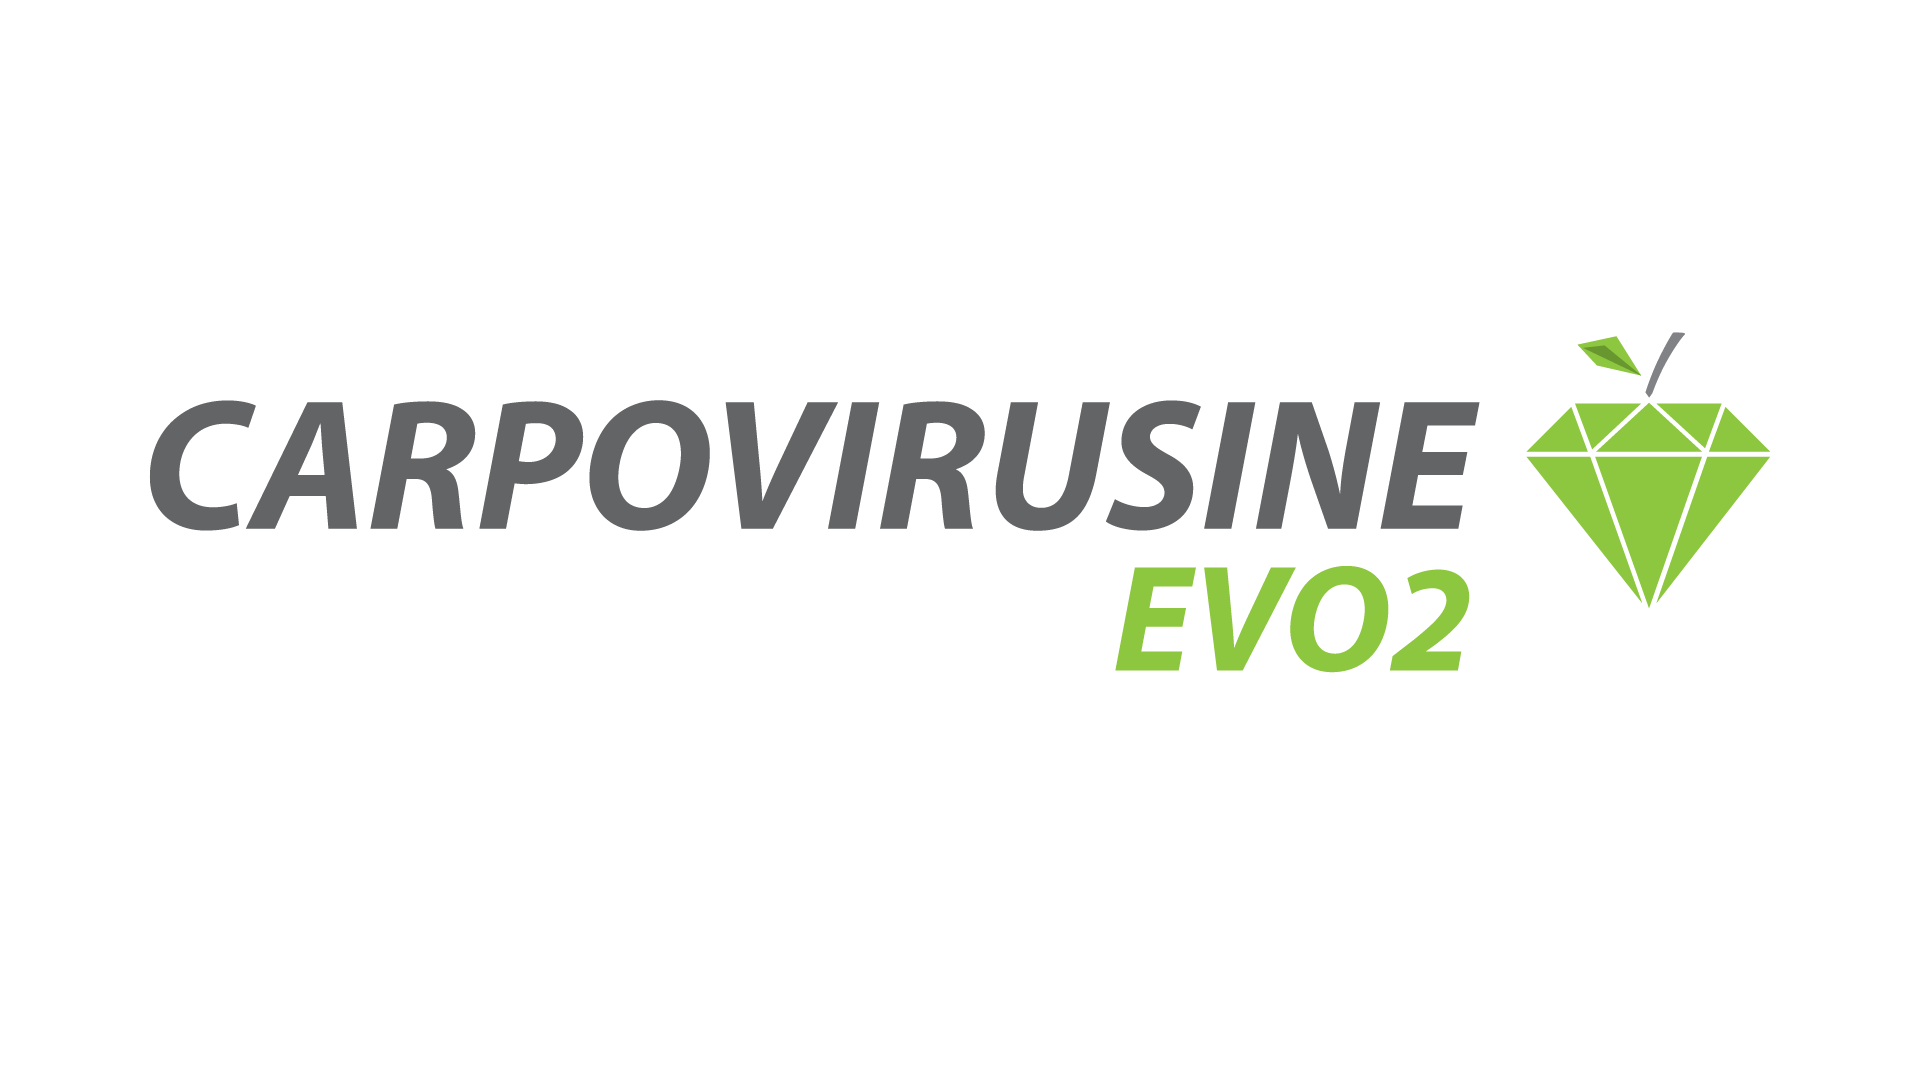 carpovirusine evo2